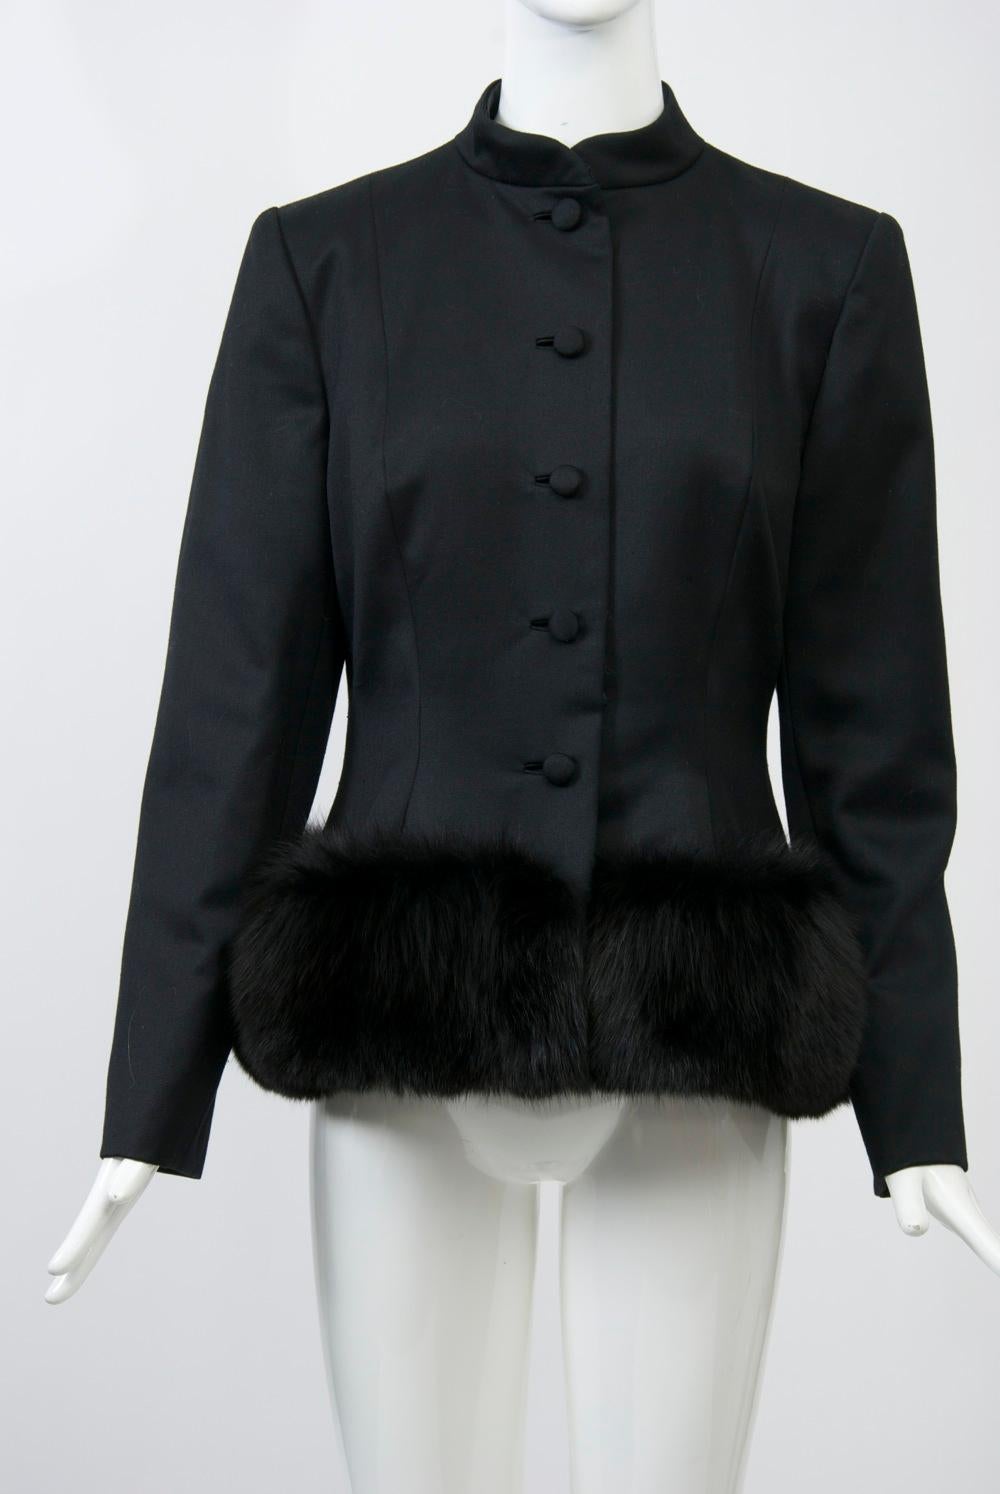 Women's Pauline Trigère Fox-Trimmed Jacket For Sale